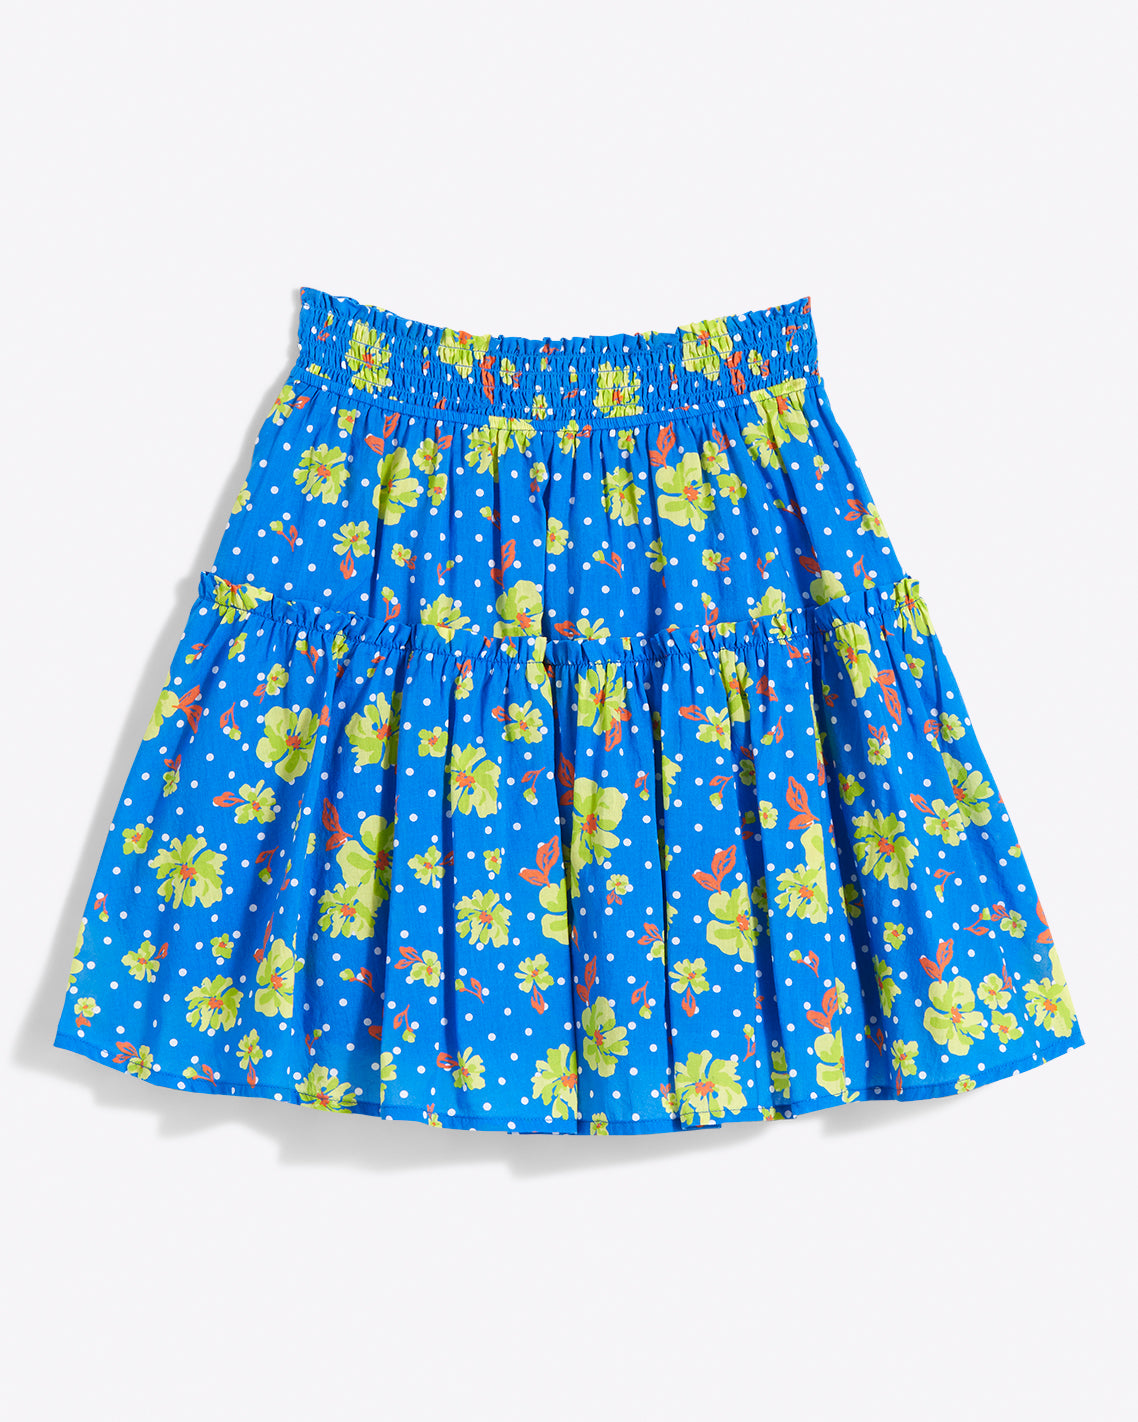 Pull On Mini Skirt in Polka Dot Floral